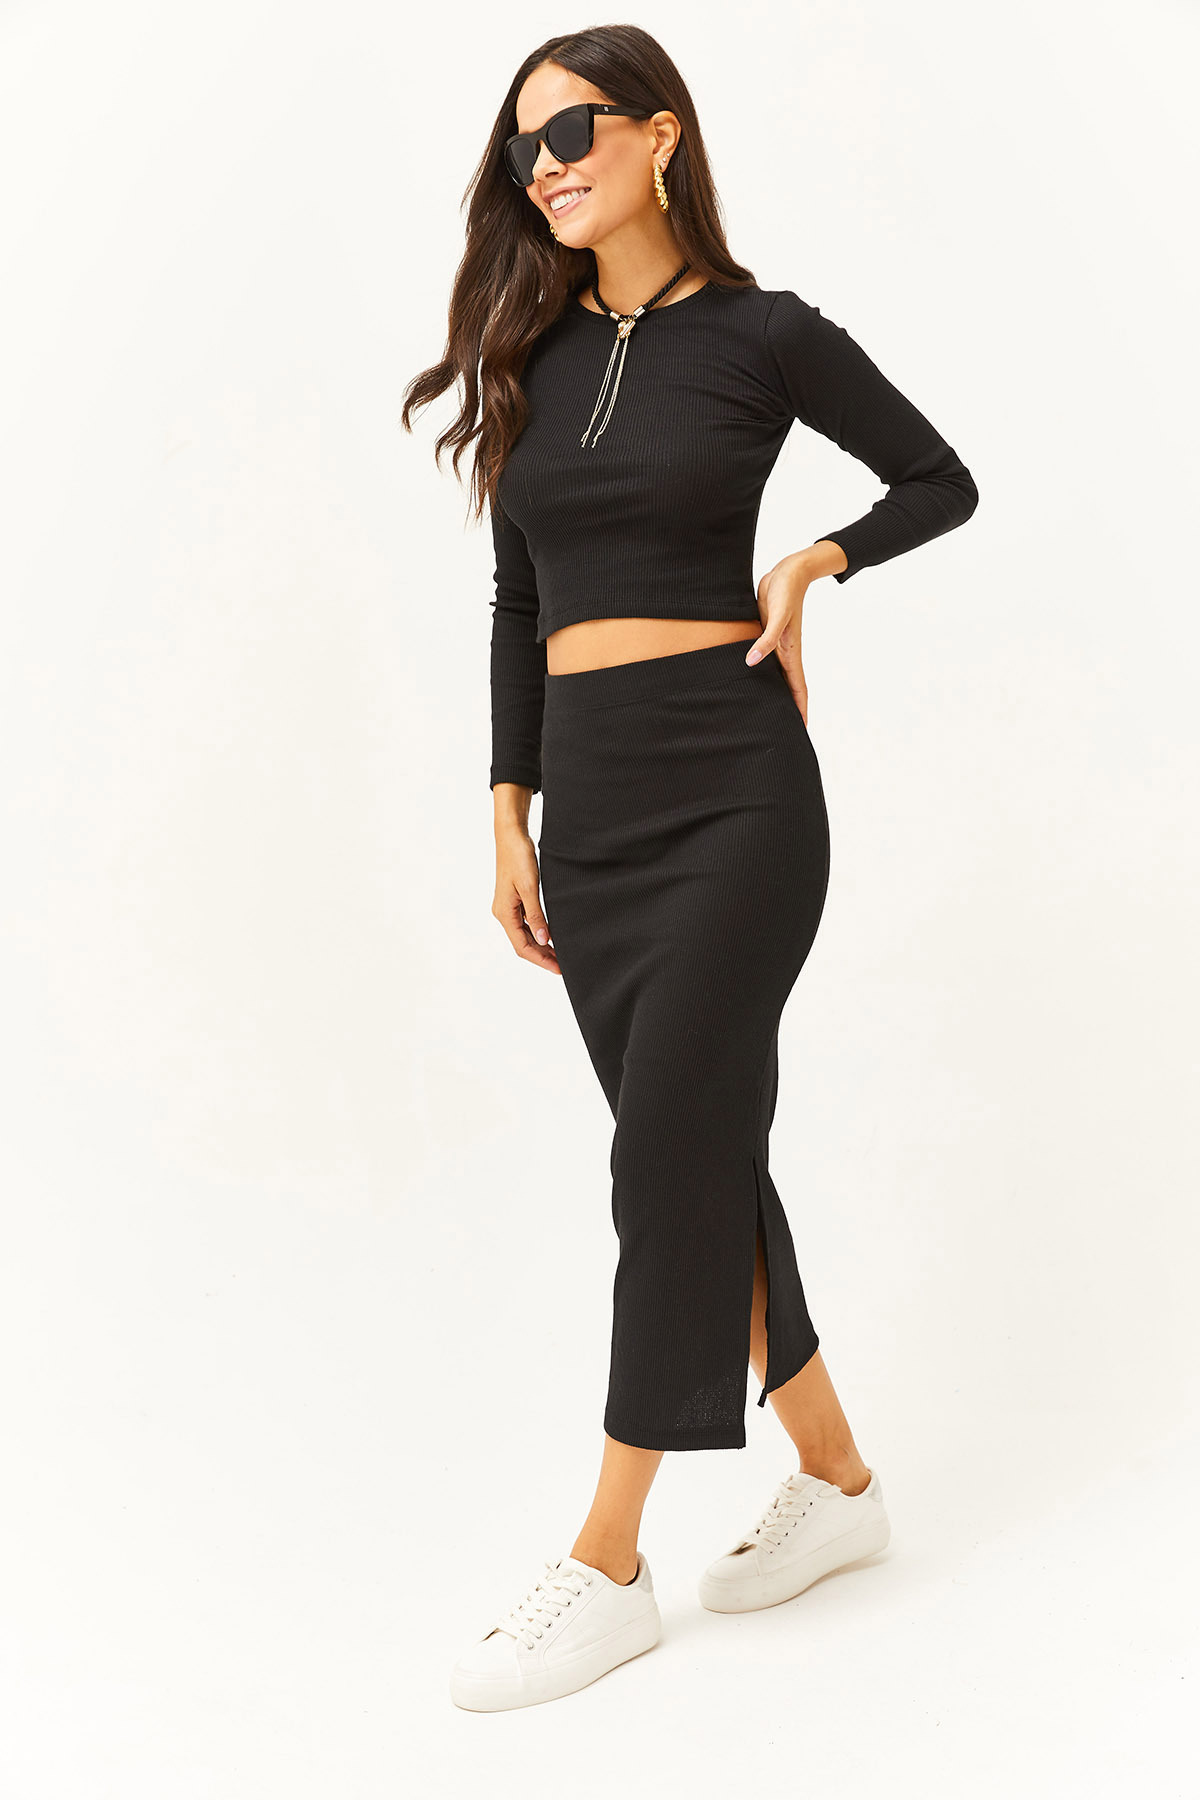 Olalook Women's Black Crew Neck Blouse Slit Skirt Lycra Suit